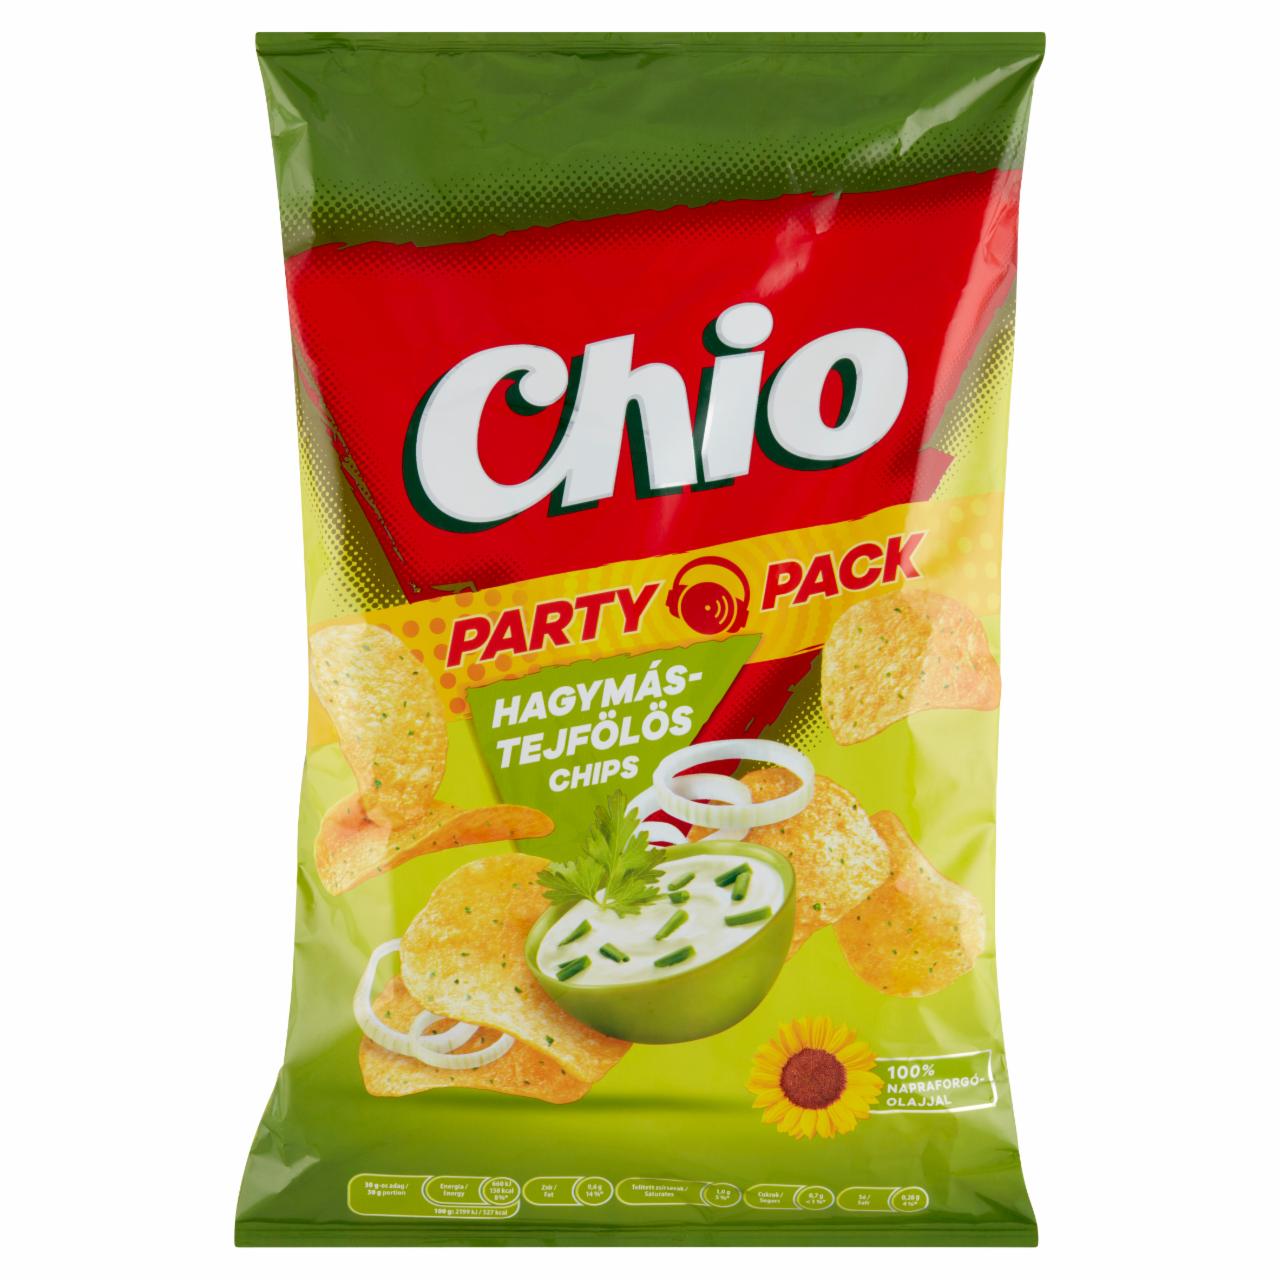 Képek - Chio Party Pack hagymás-tejfölös burgonyachips 240 g